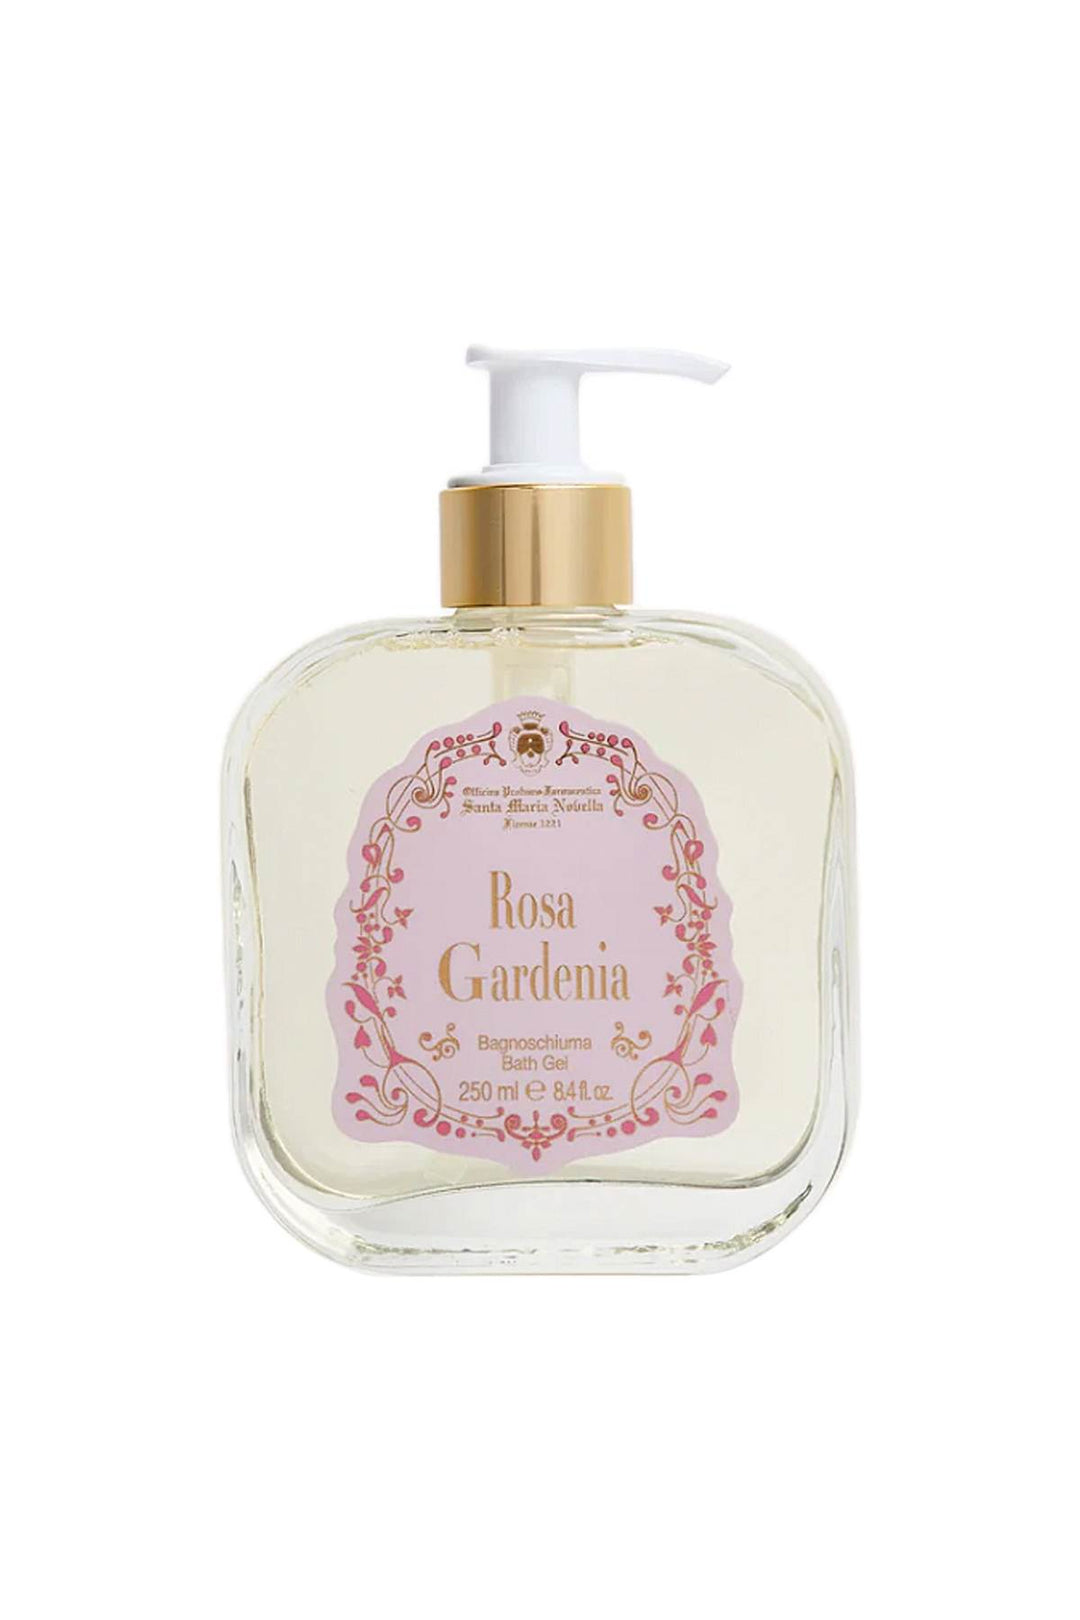 Officina profumo farmaceutica di s.m.nov rosa gardenia bath gel - 250 ml-0